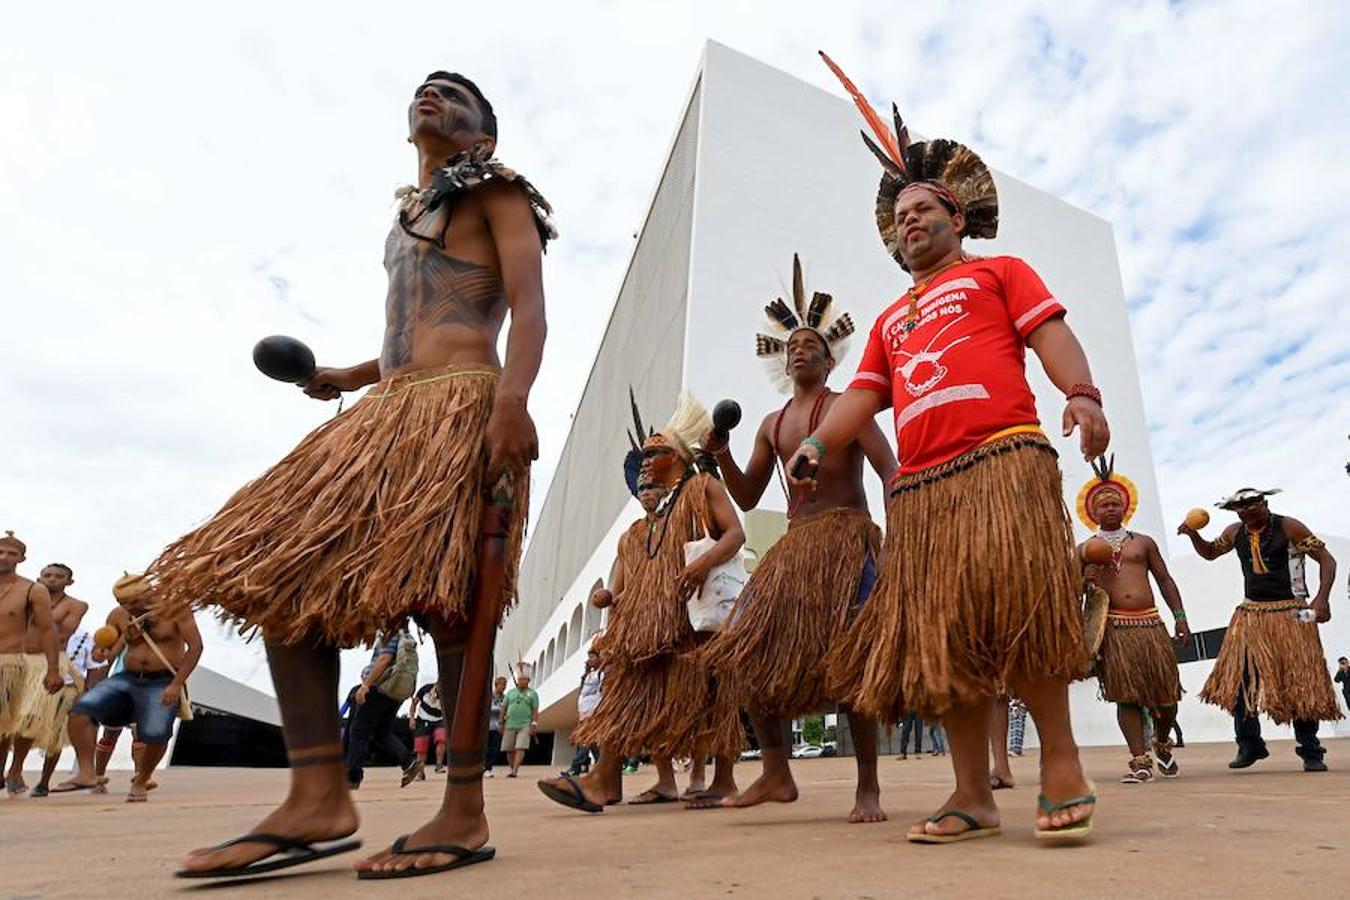 Indios brasileños protestan en favor de la demarcación de sus territorios este jueves en la Explanada de los Ministerios de la capital del país, Brasilia.